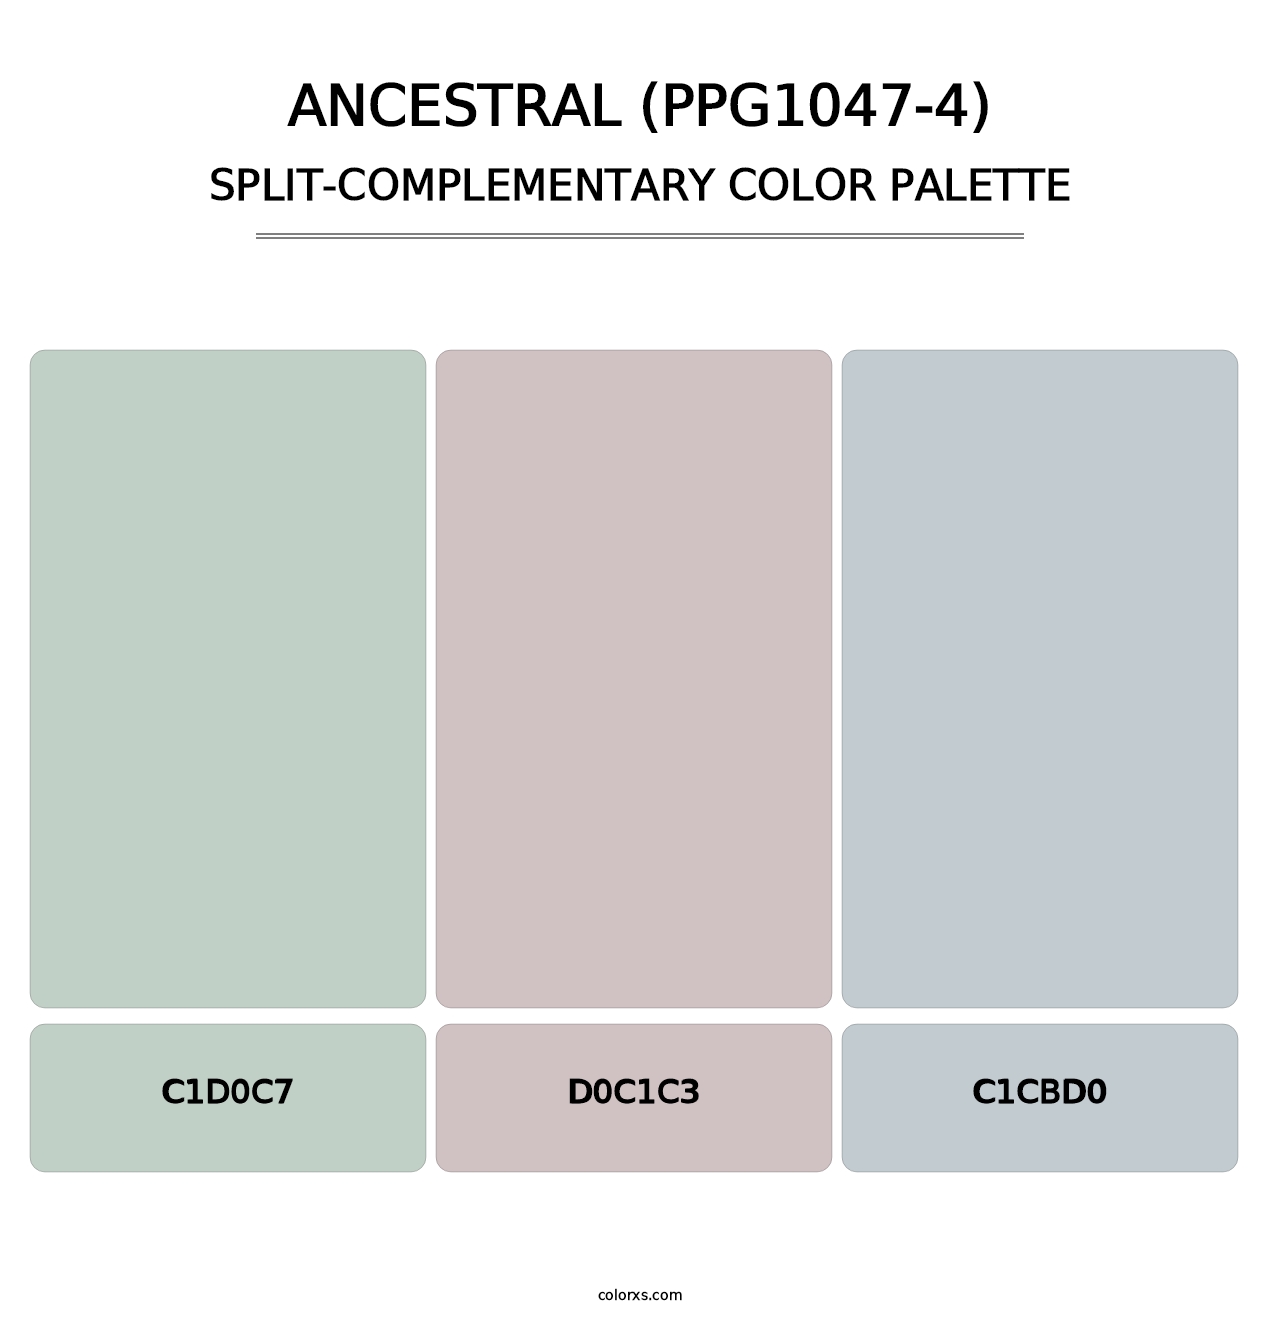 Ancestral (PPG1047-4) - Split-Complementary Color Palette